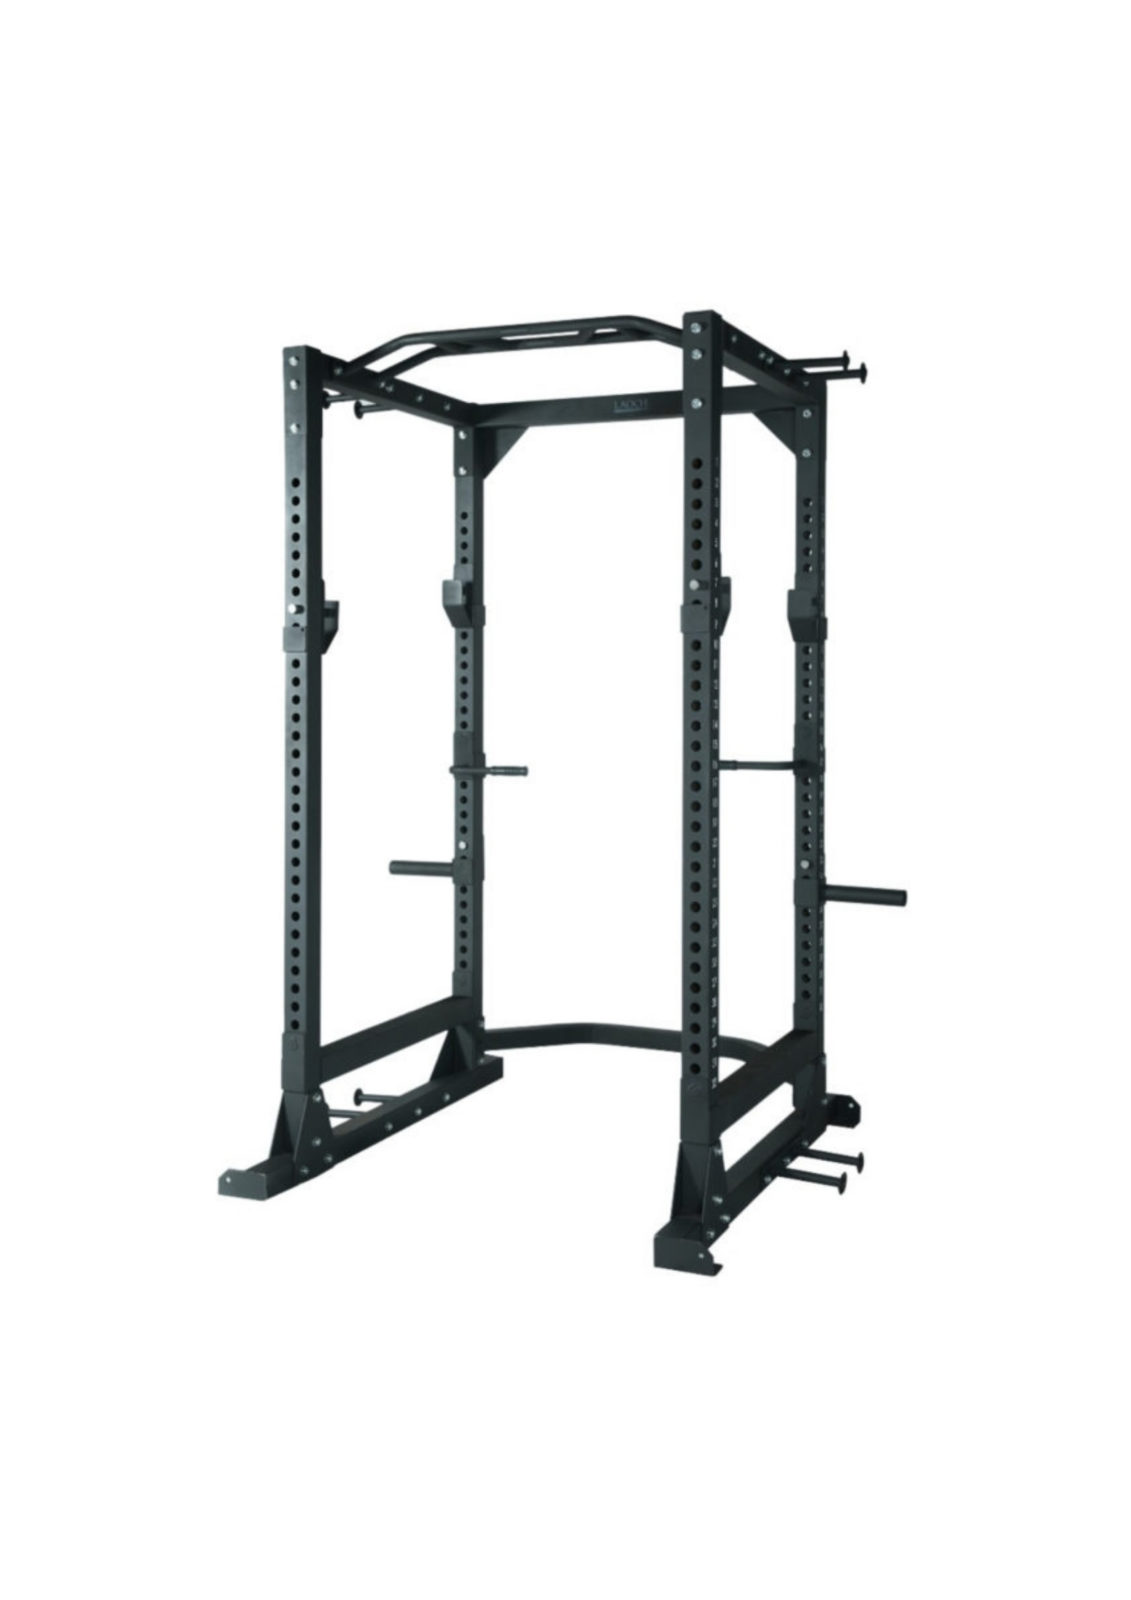 Full Commercial Power Rack Fitness Equipment Ireland Best for buying Gym Equipment